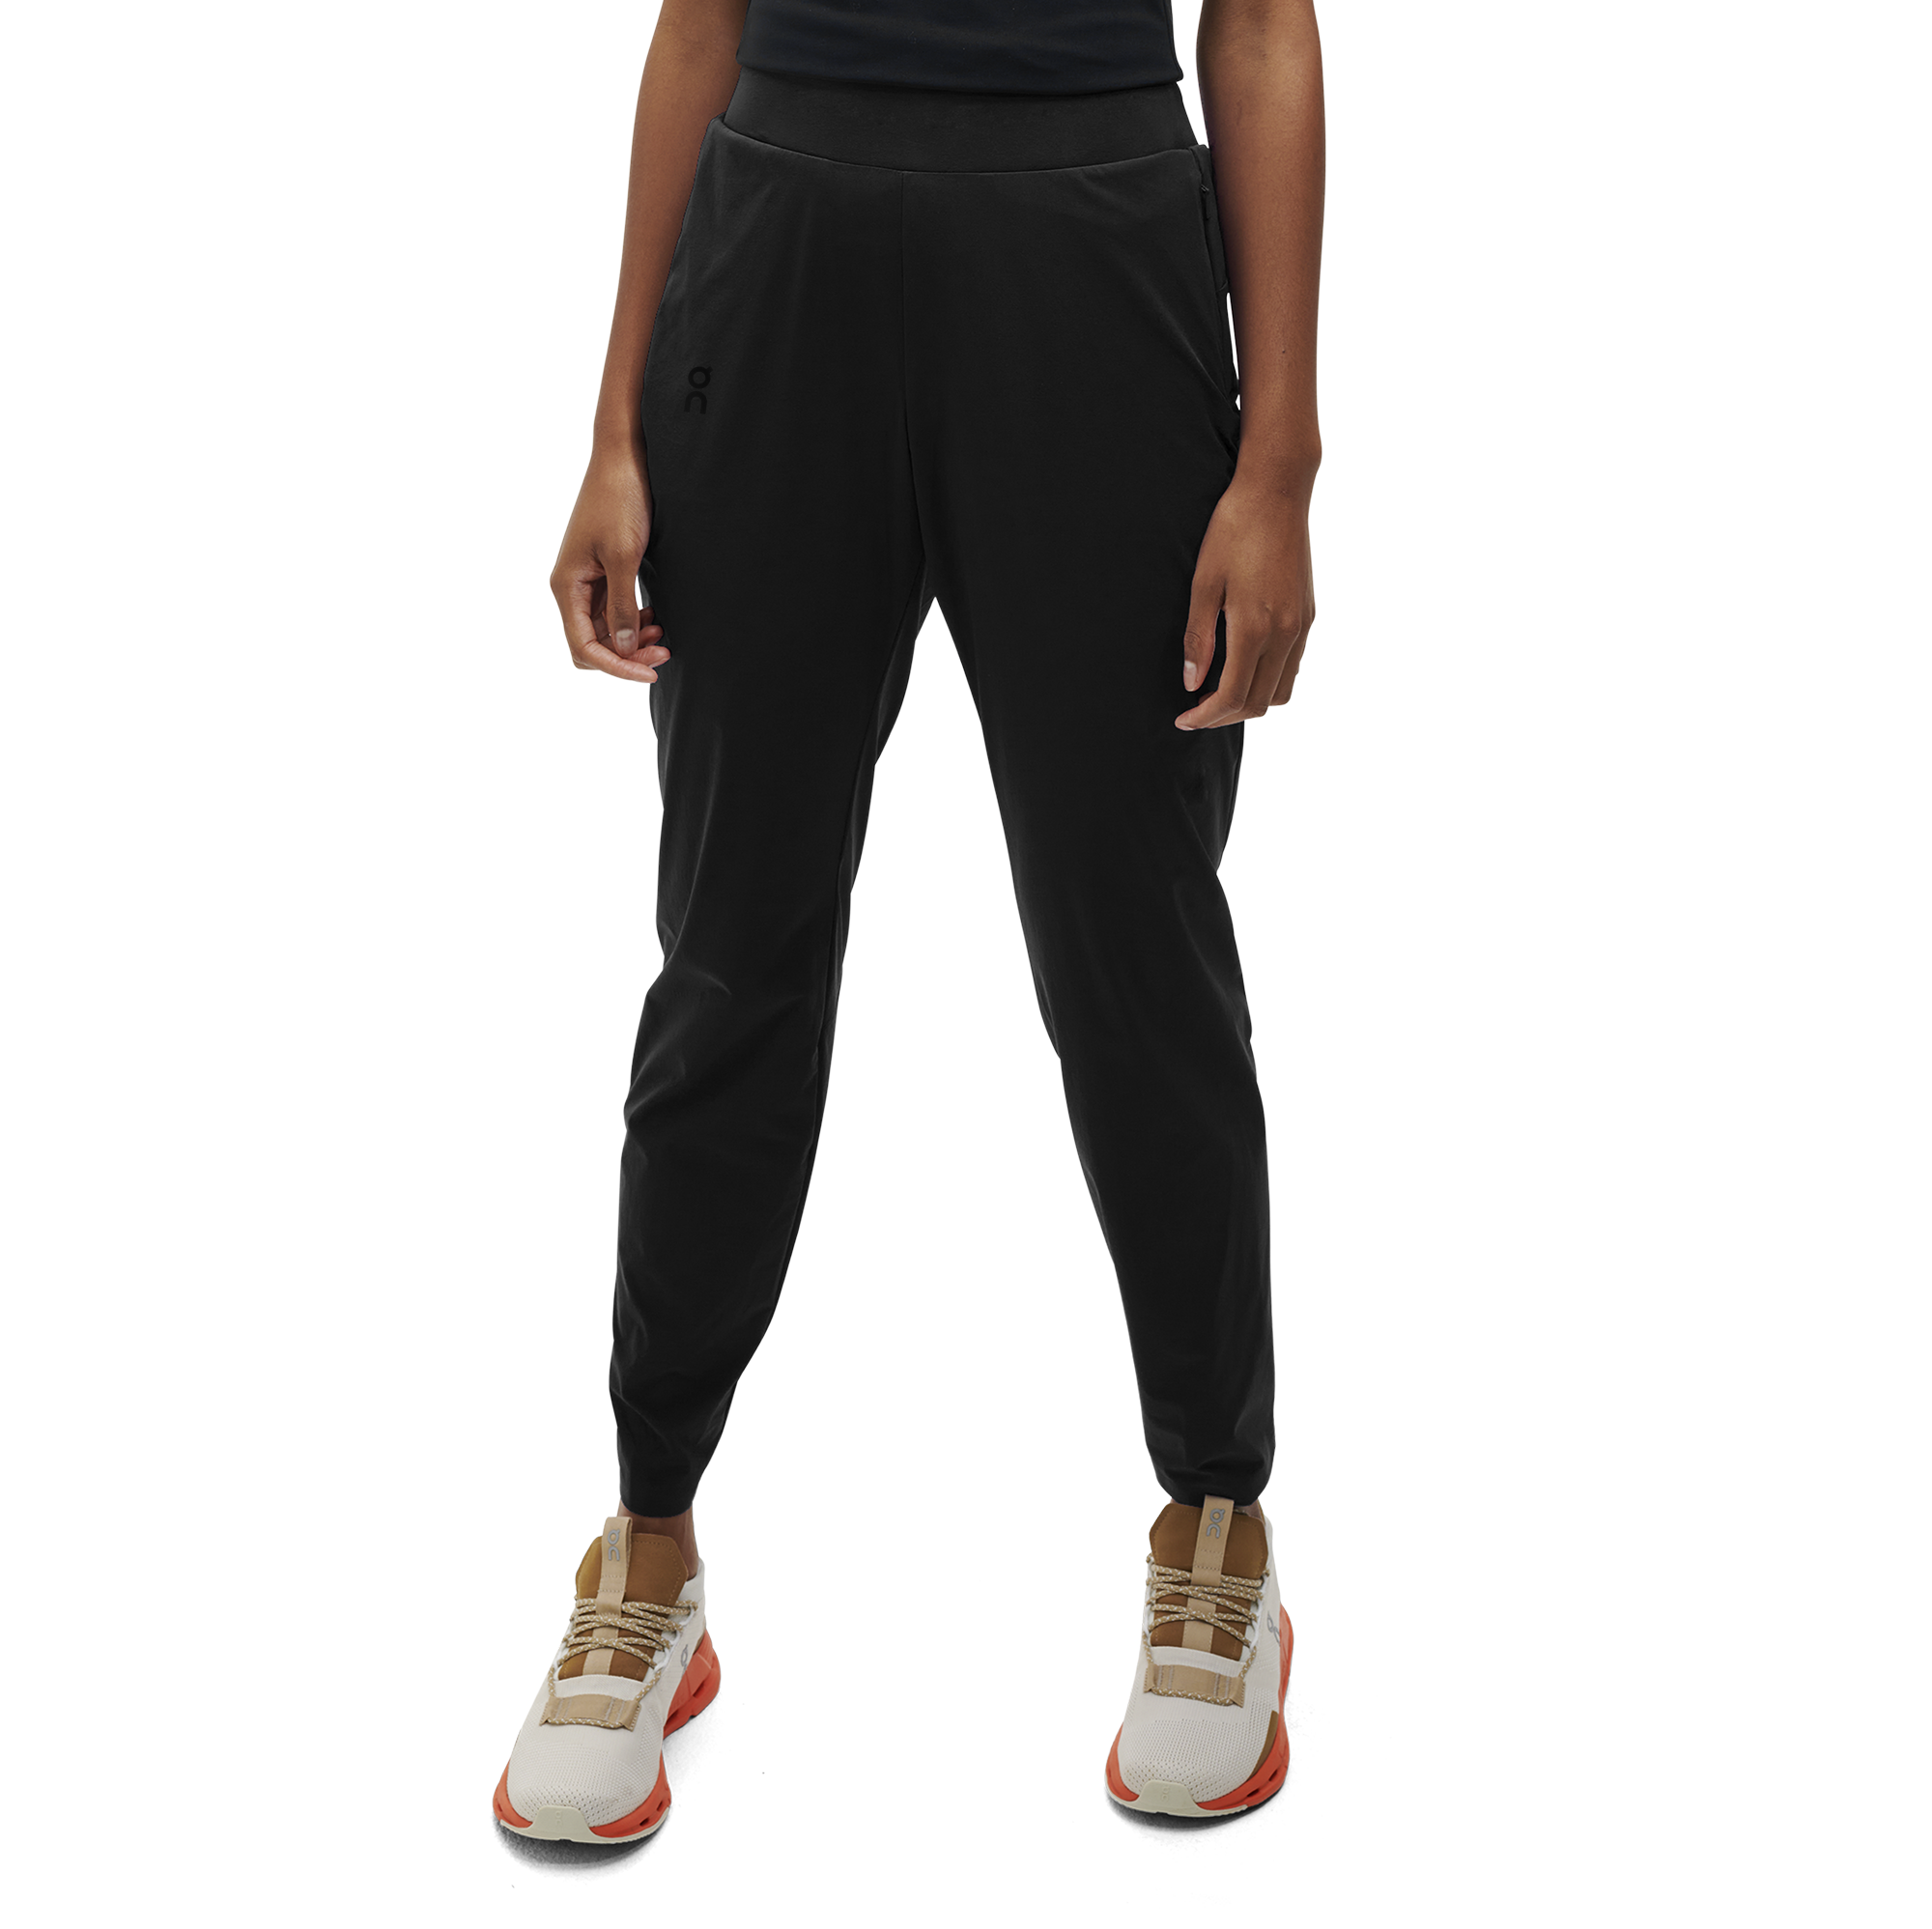 On Lightweight Pants Black Women Women - Running, training, lightweight Pants